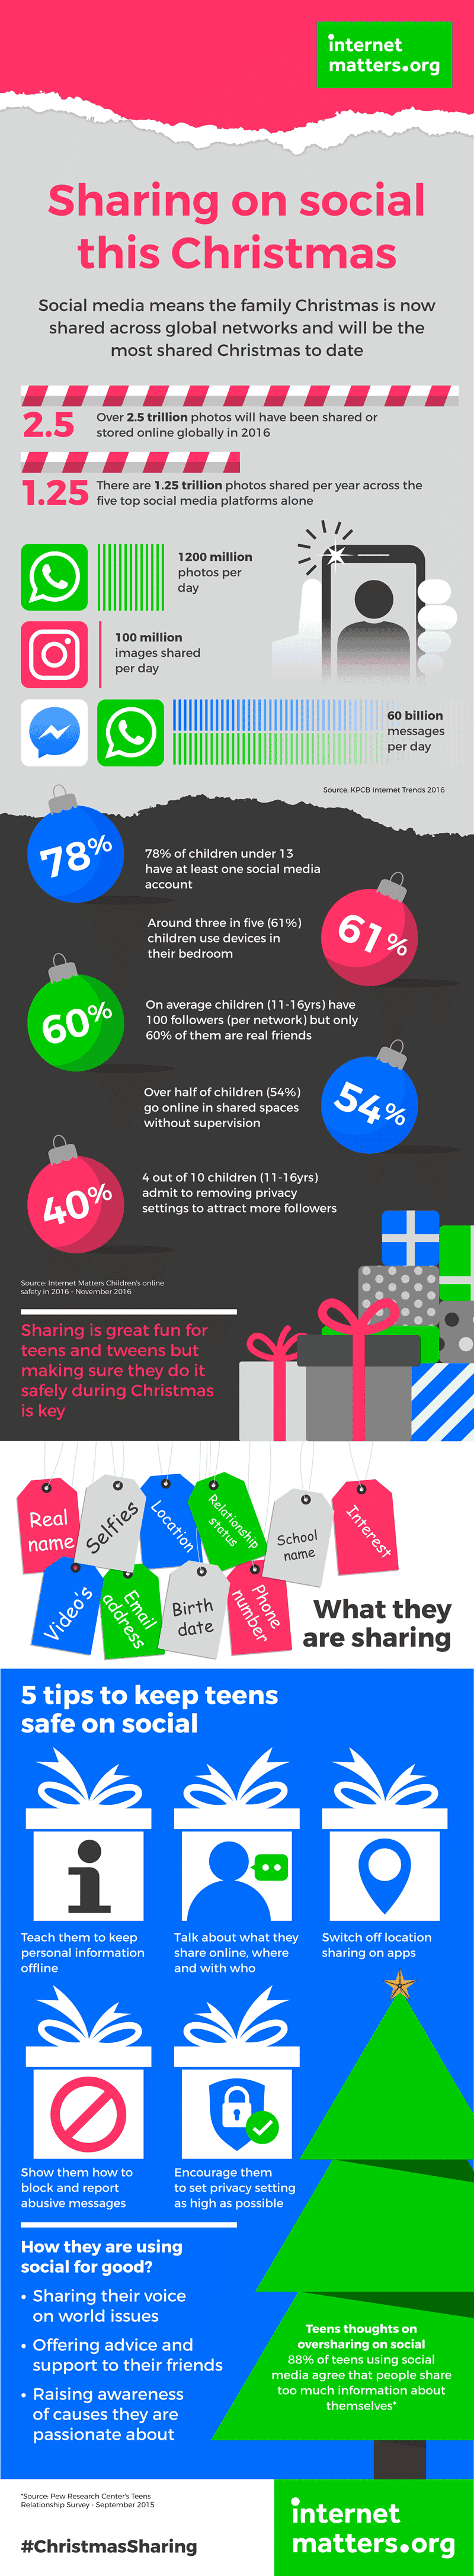 Ожидается, что это Рождество будет самым большим в сети, и 7 декабря в социальных сетях будут опубликованы 25 миллиардов изображений. Ознакомьтесь с другой статистикой по обмену в социальных сетях и советами, как помочь детям безопасно делиться информацией в Интернете.